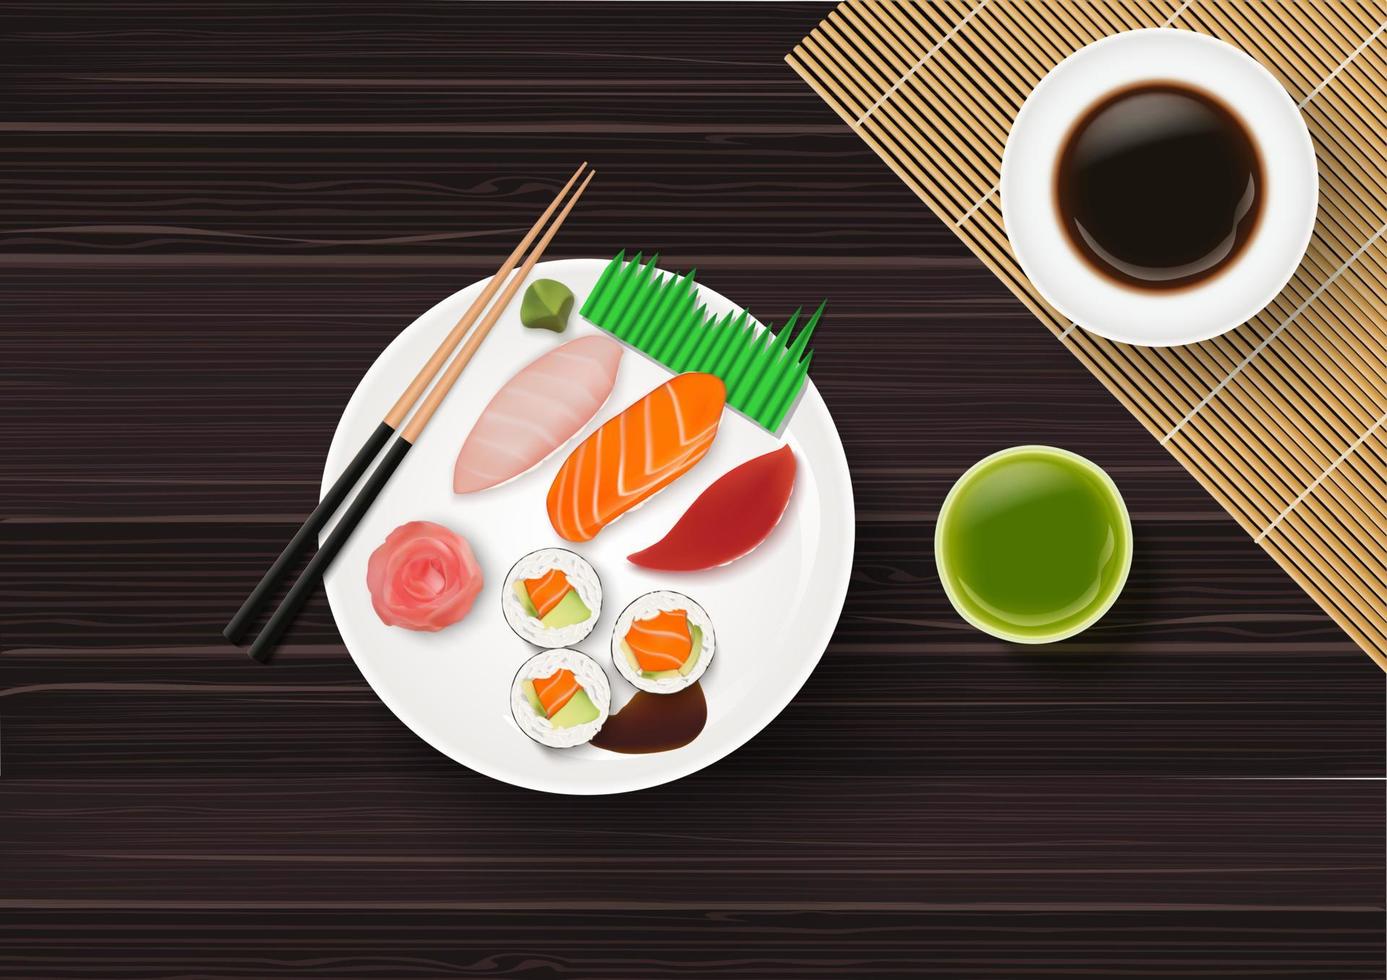 sushi, japansk mat på träbordsbakgrund vektor